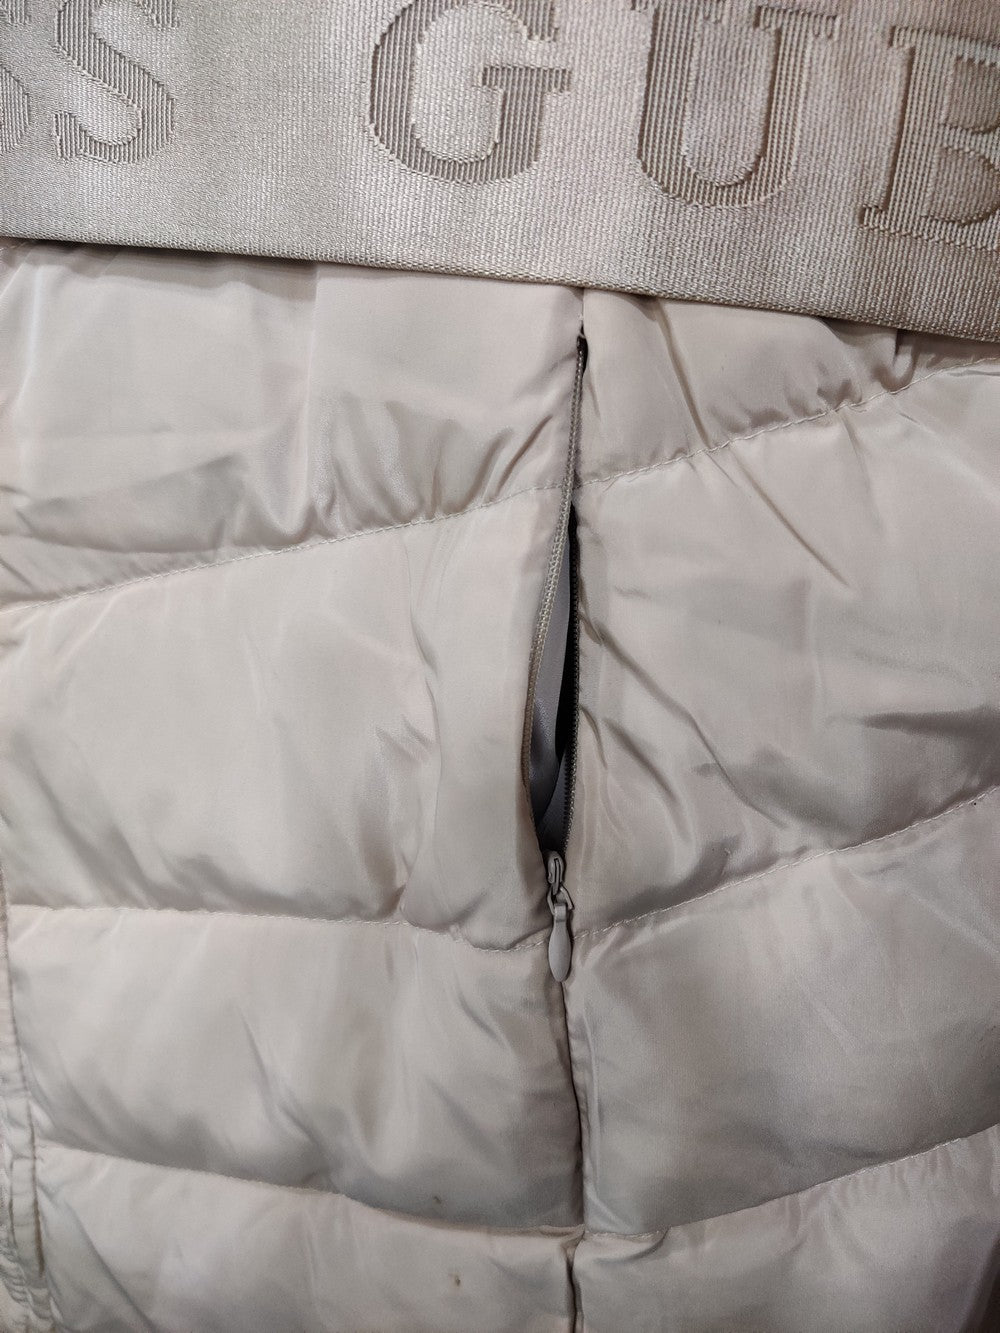 Guess Branded Original Puffer Long Parka Hood Jacket For Women